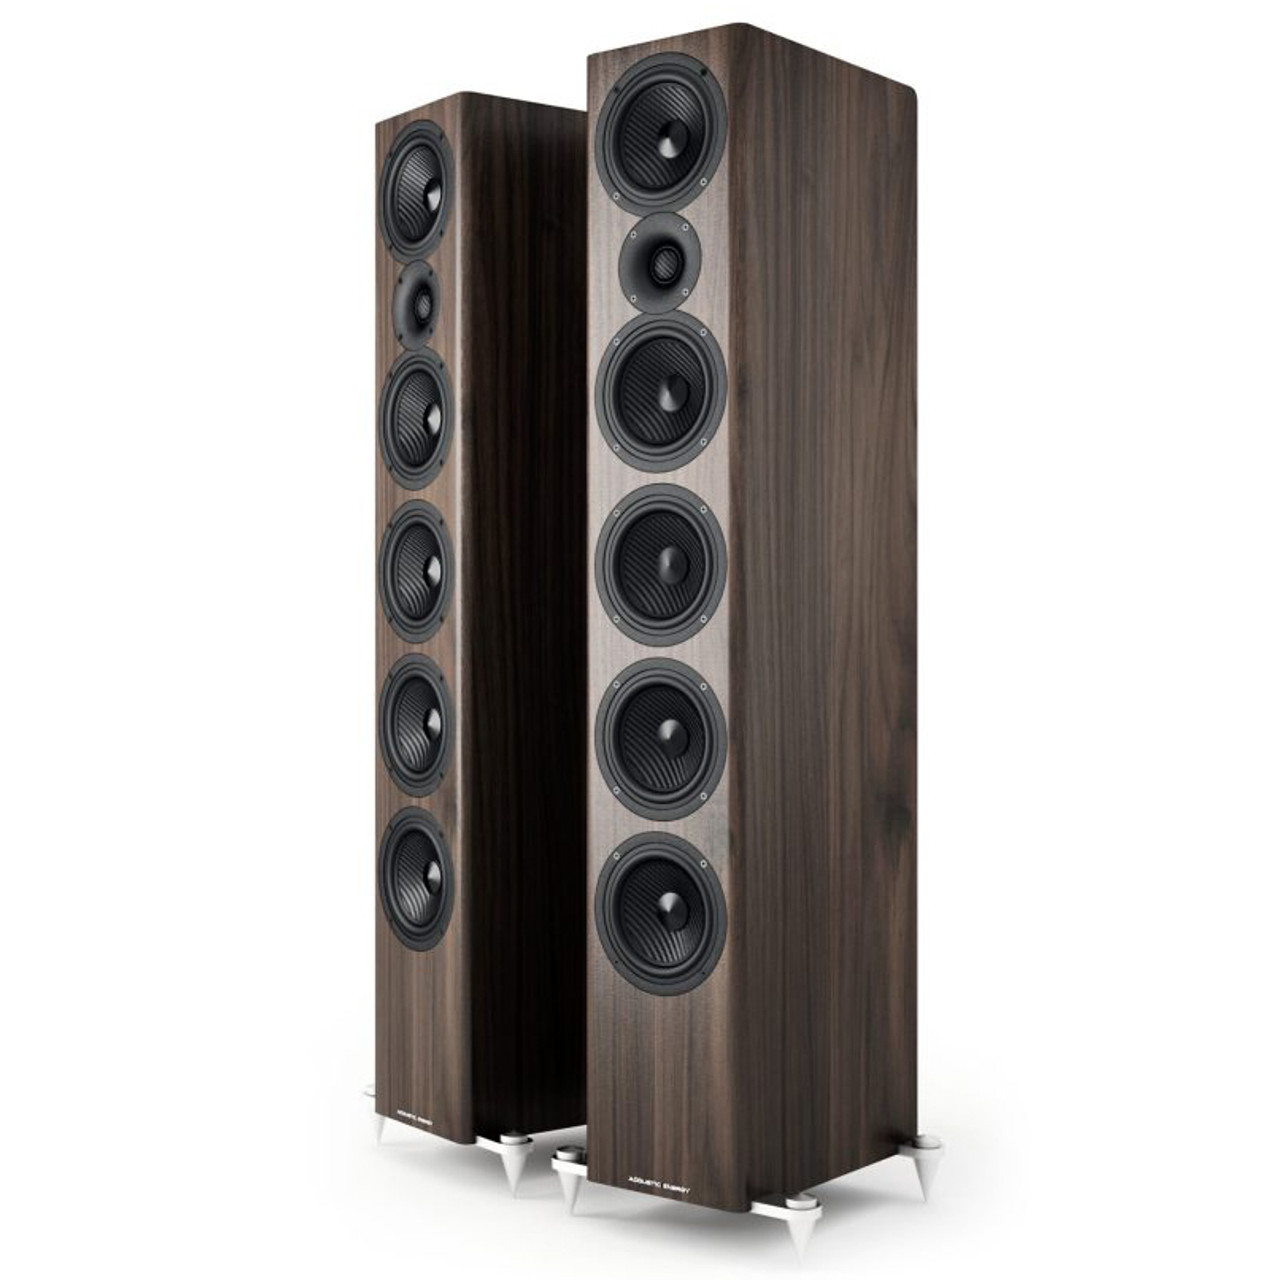 Acoustic Energy AE520 speakers